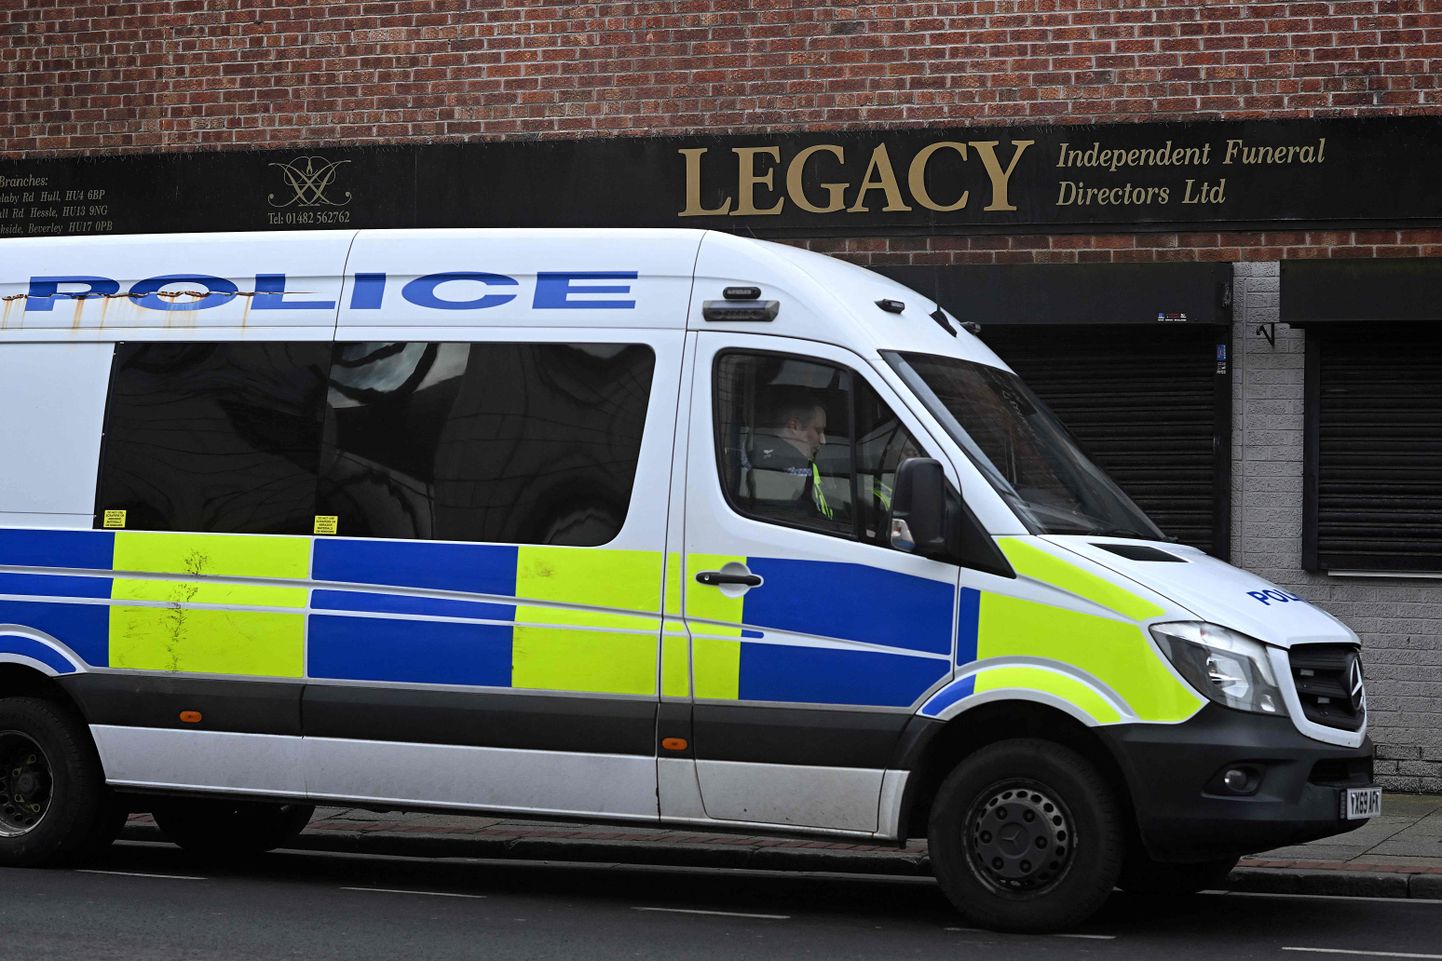 Briti politsei otsis 13. märtsil 2024 Hullis läbi matusebüroo Legacy Independent Funeral Directors, mida kahtlustatakse surnukehade hoidmise reeglite eiramises ja lahkunute peredele mitte nende lähedase, vaid kellegi teise tuha andmises.